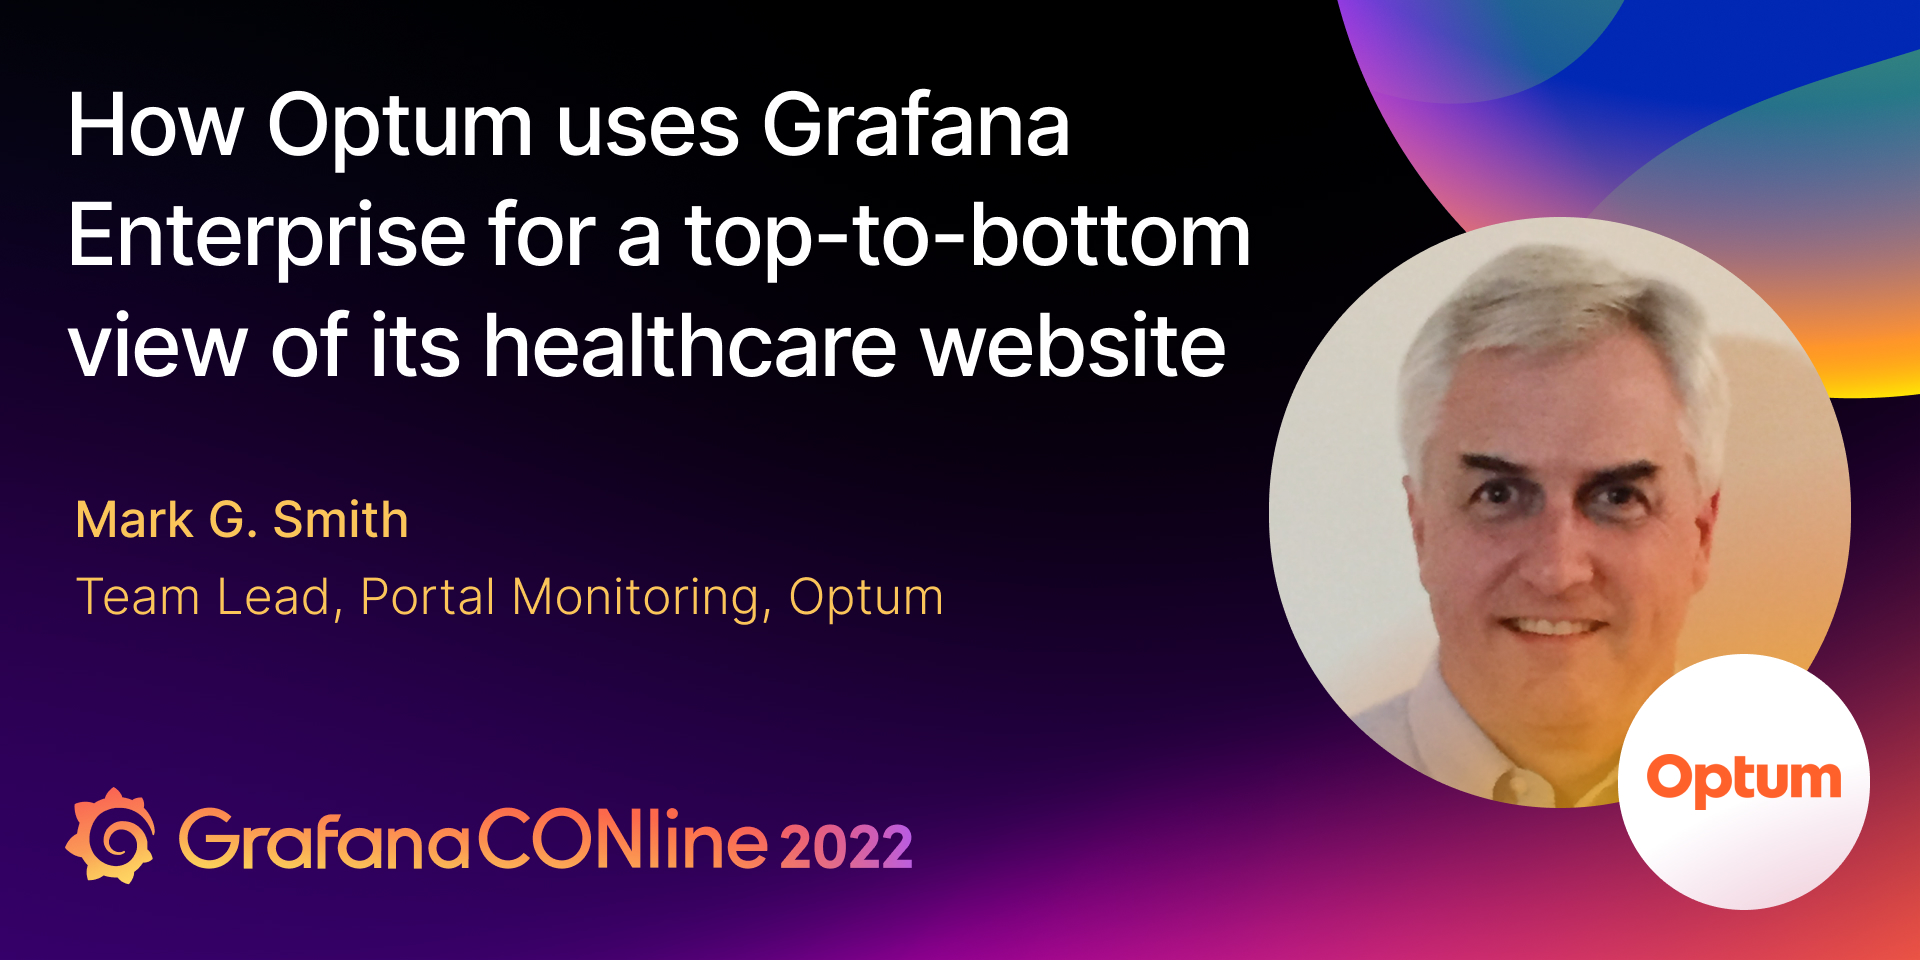 如何使用Grafana为联合健康集团企业为其医疗网站有一个全面的观点